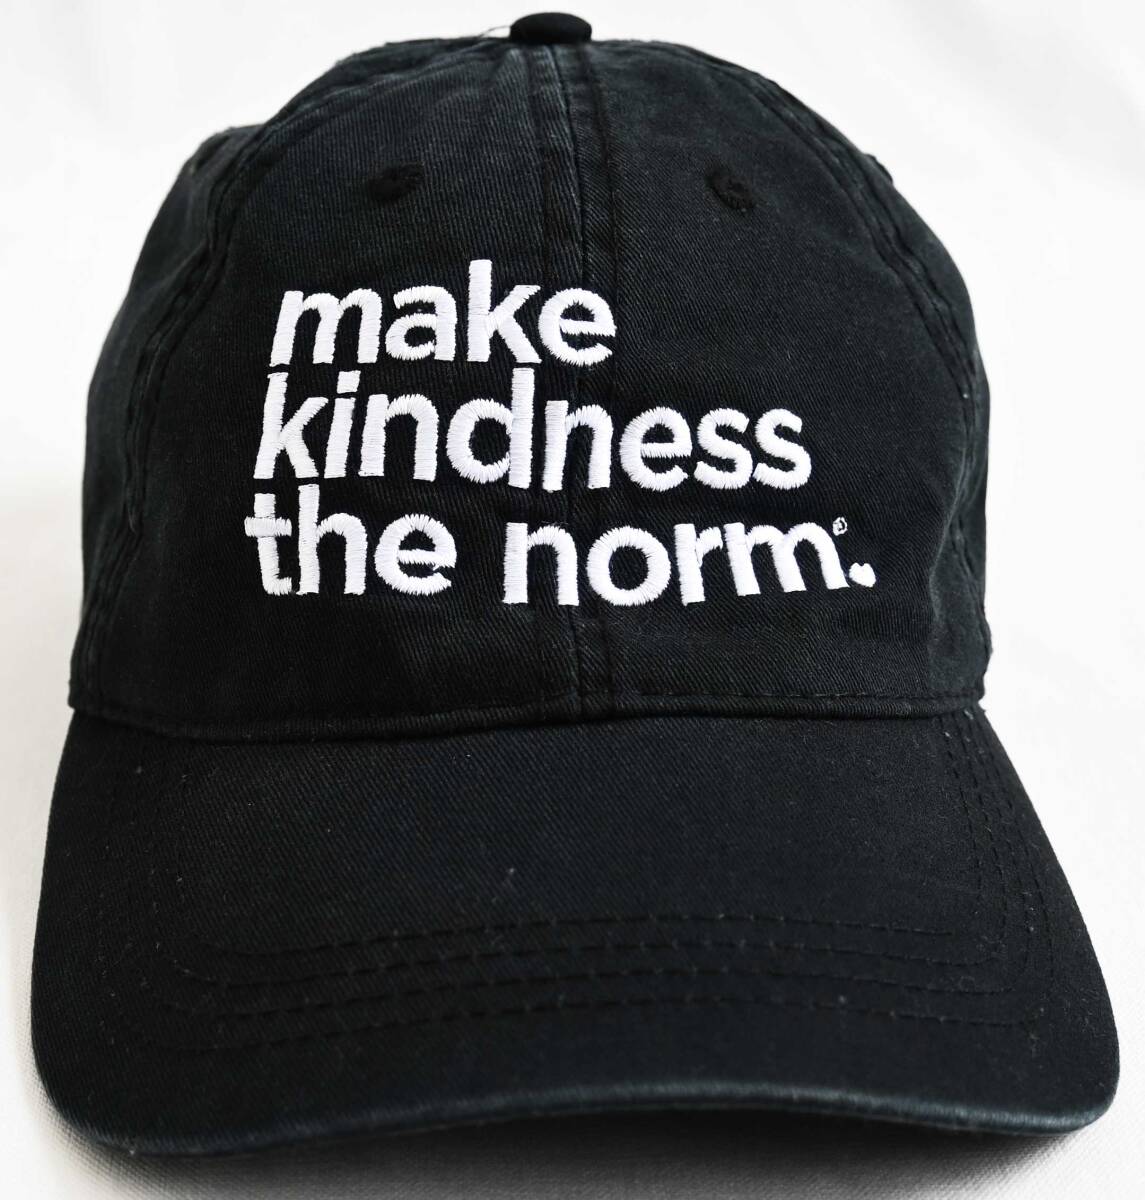  быстрое решение [Random Acts of Kindness.org]make kindness the norm./ официальный колпак / свободный размер / черный /CAP AMERICA(nk-244-5-2)